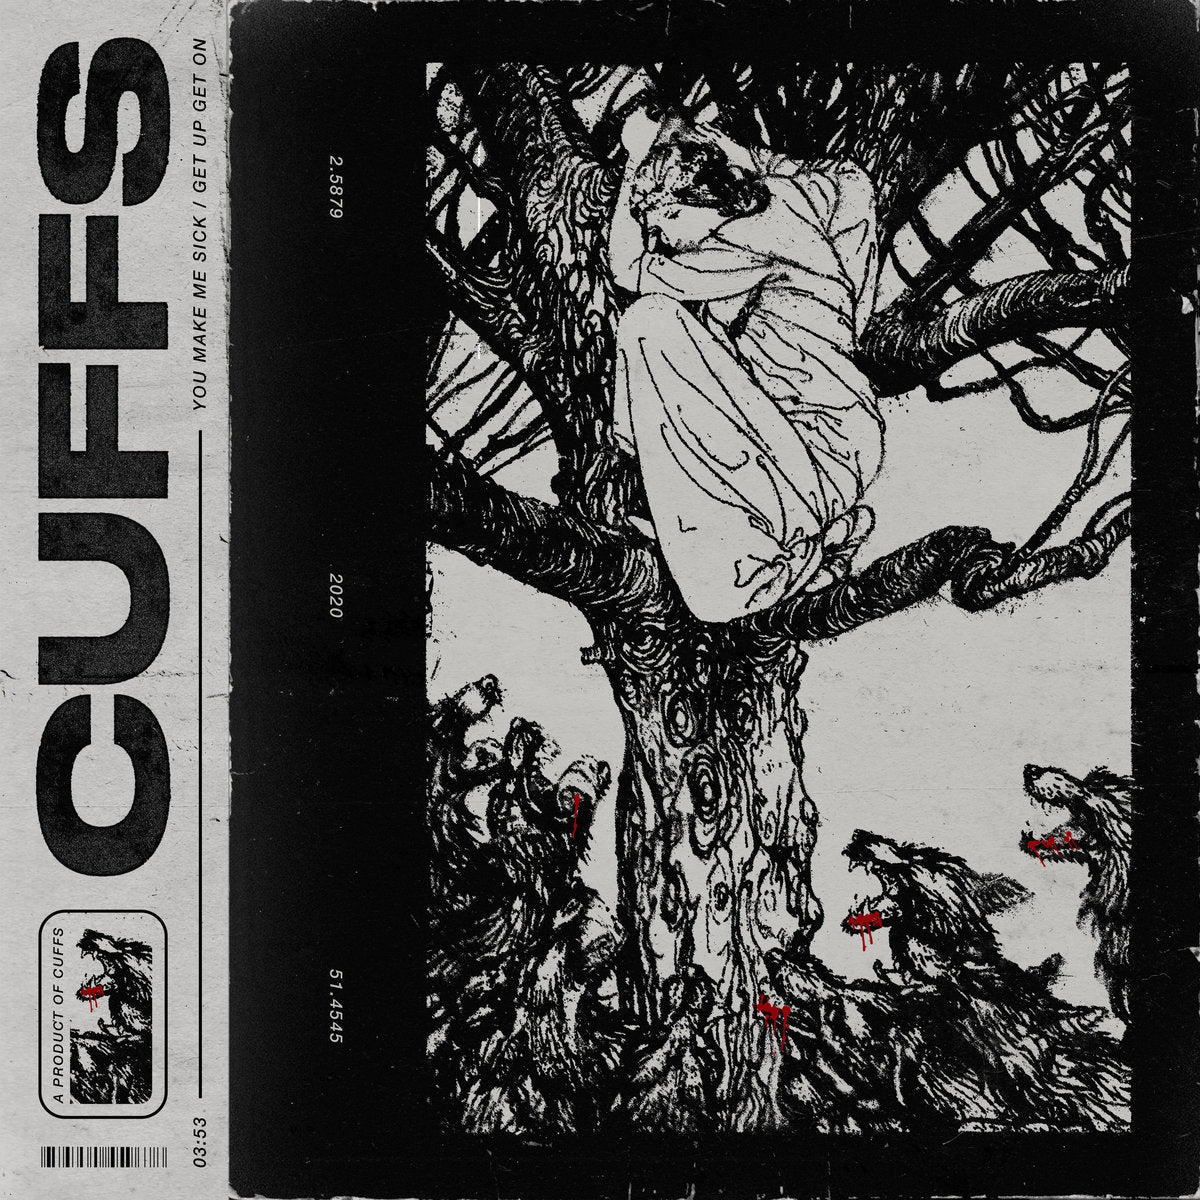 Cuffs - You Make Me Sick / Get Up Get On 7" - Vinyl - Cuffs